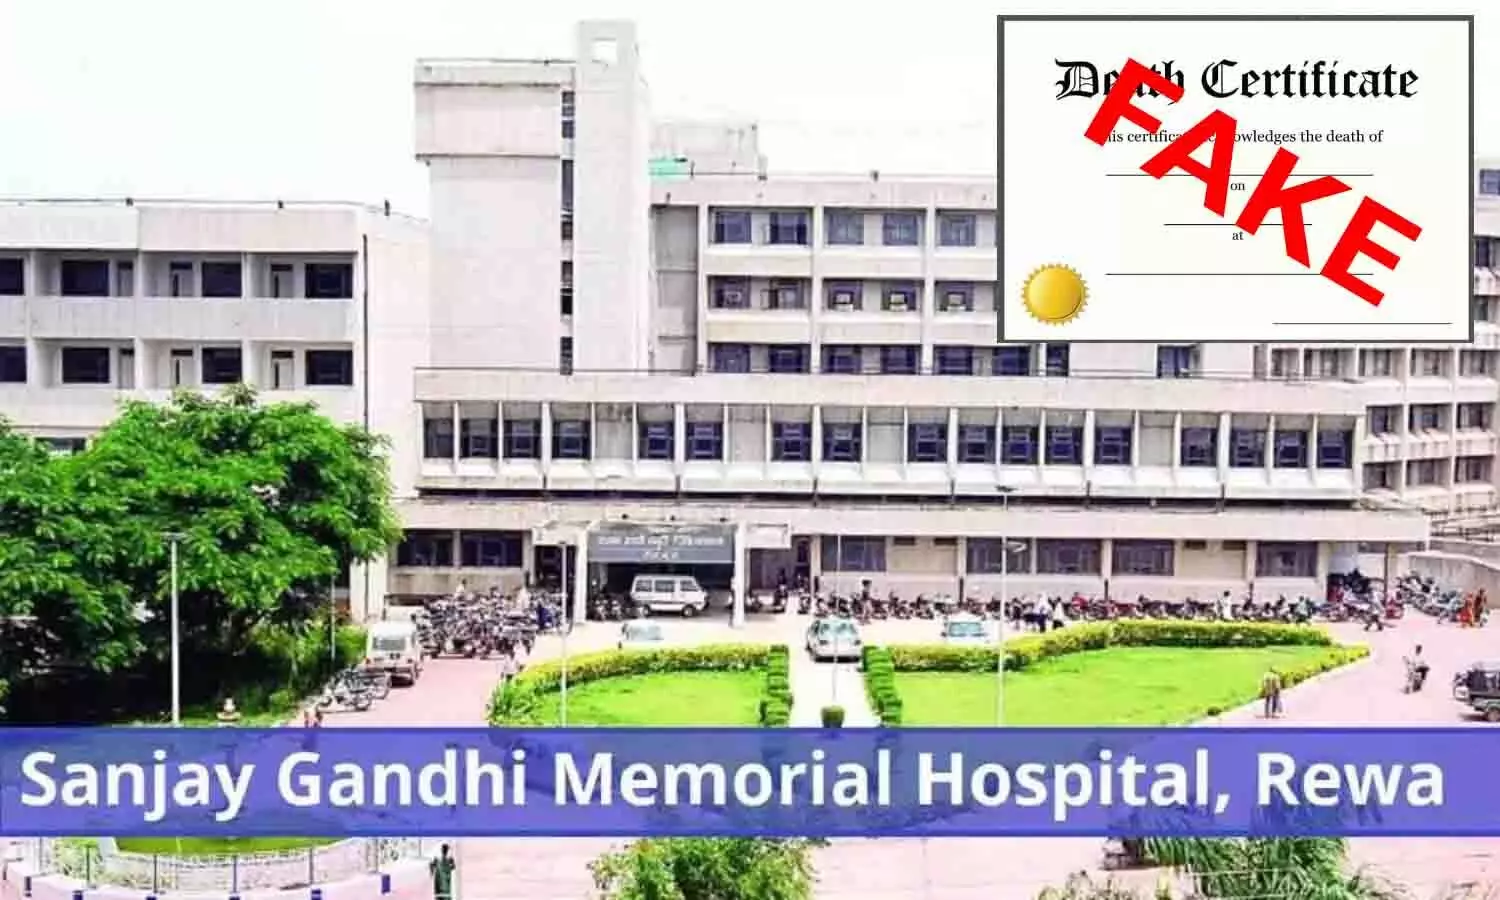 रीवा के SGMH की फर्जी वेबसाइट से जारी हो रहें जन्म-मृत्यु प्रमाण पत्र, सरकारी अस्पताल के सील-मुहर लगाकर फ्रॉड